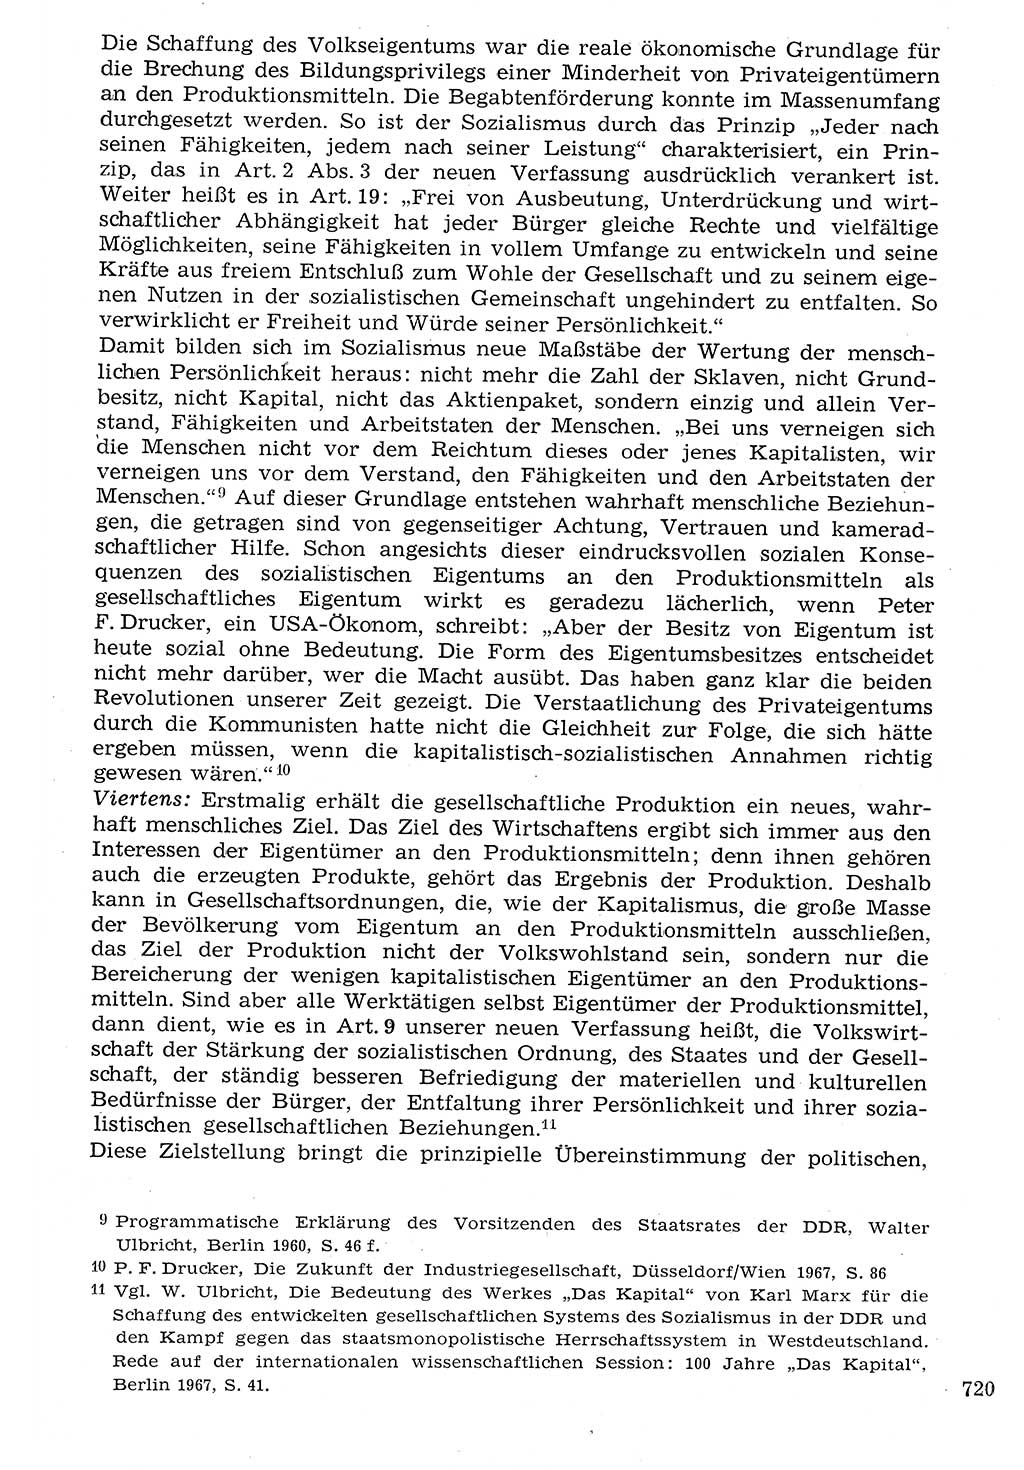 Staat und Recht (StuR), 17. Jahrgang [Deutsche Demokratische Republik (DDR)] 1968, Seite 720 (StuR DDR 1968, S. 720)